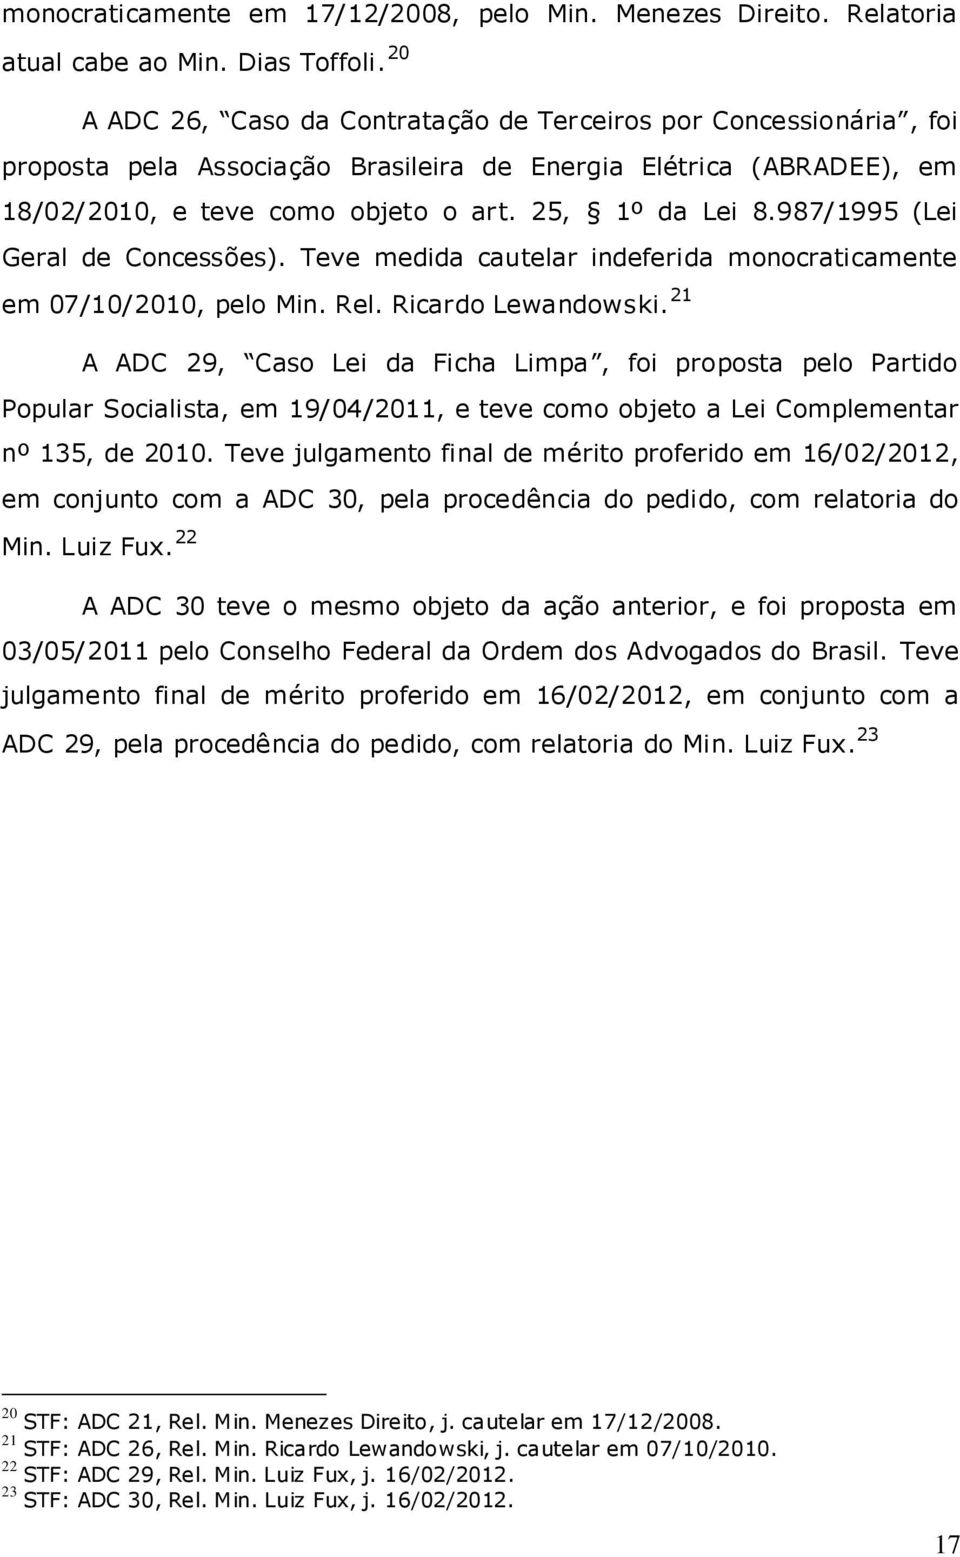 987/1995 (Lei Geral de Concessões). Teve medida cautelar indeferida monocraticamente em 07/10/2010, pelo Min. Rel. Ricardo Lewandowski.